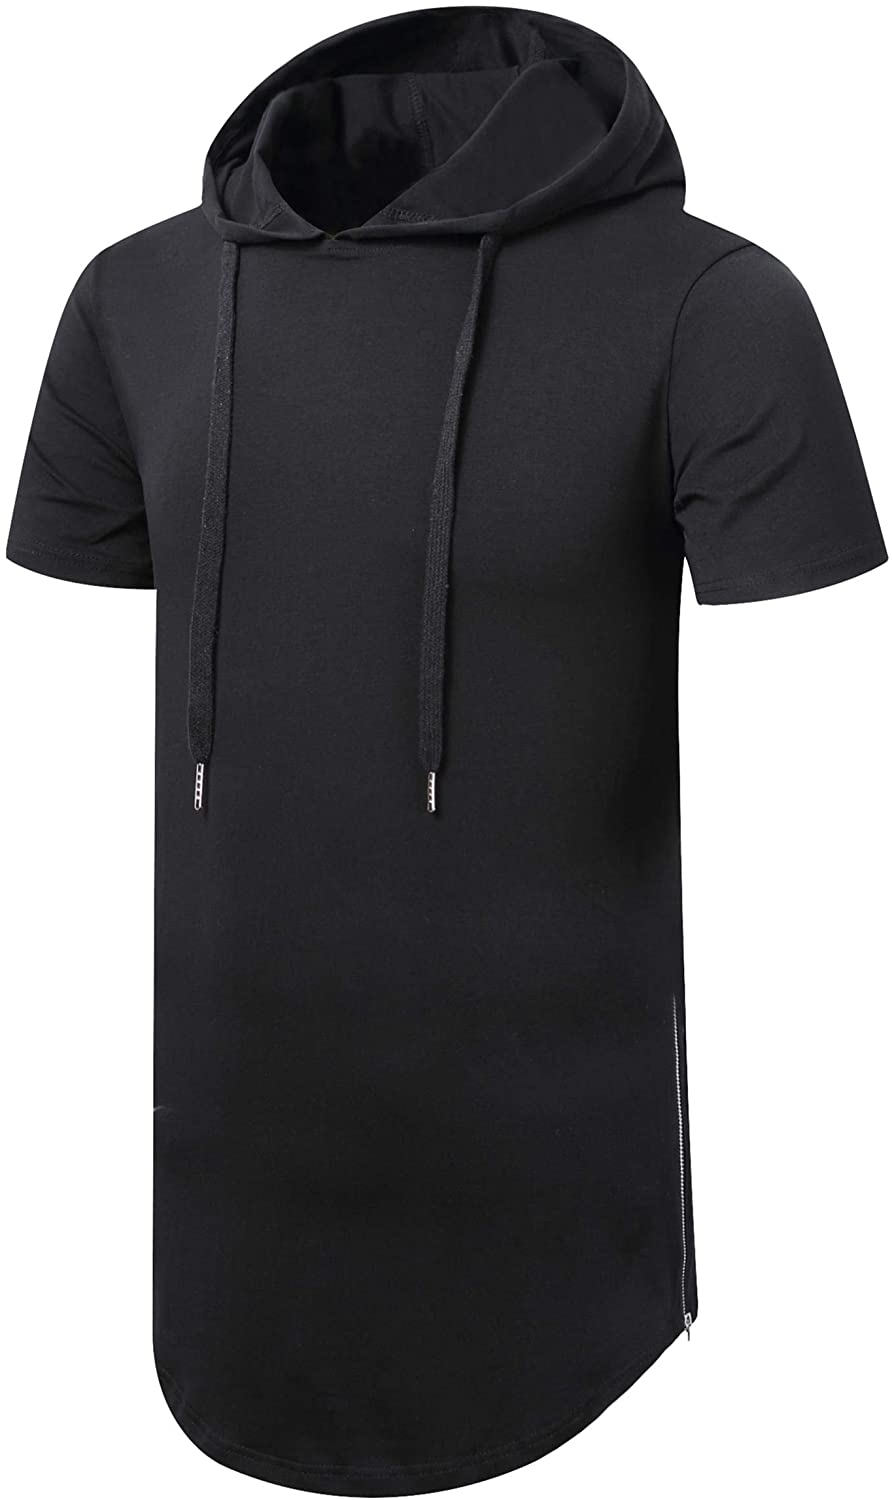 Aiyino Men's Hipster Hip Hop Short/Long Sleeve Longline Pullover Hoodies Side Zipper T Shirt